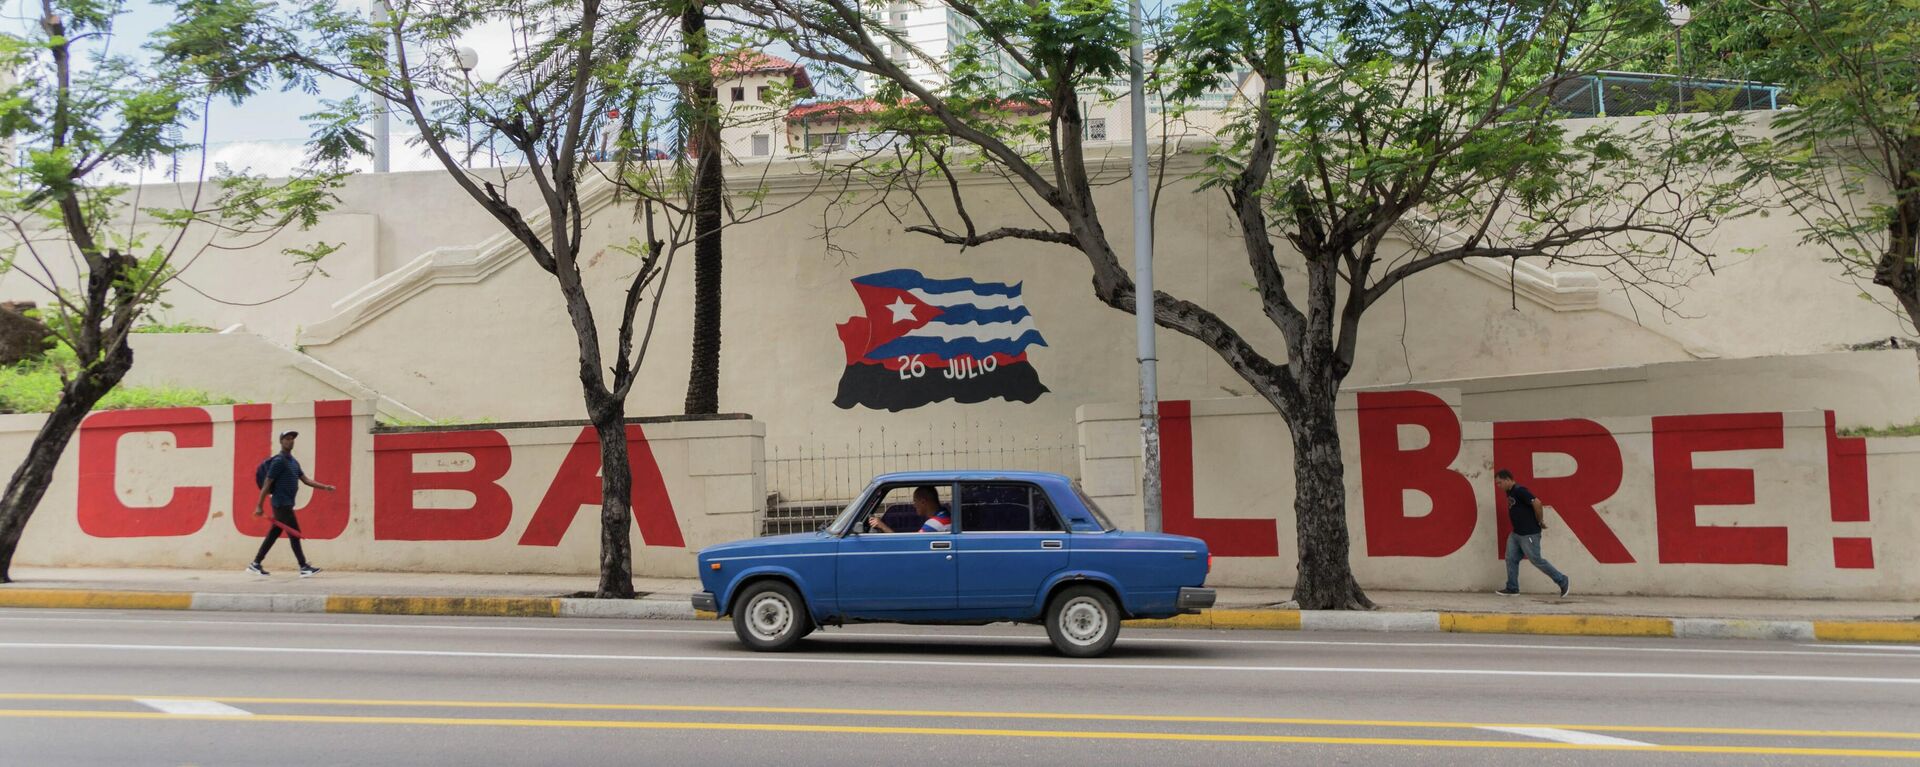 Mural 'Cuba libre' en las calles de La Habana - Sputnik Mundo, 1920, 26.03.2021